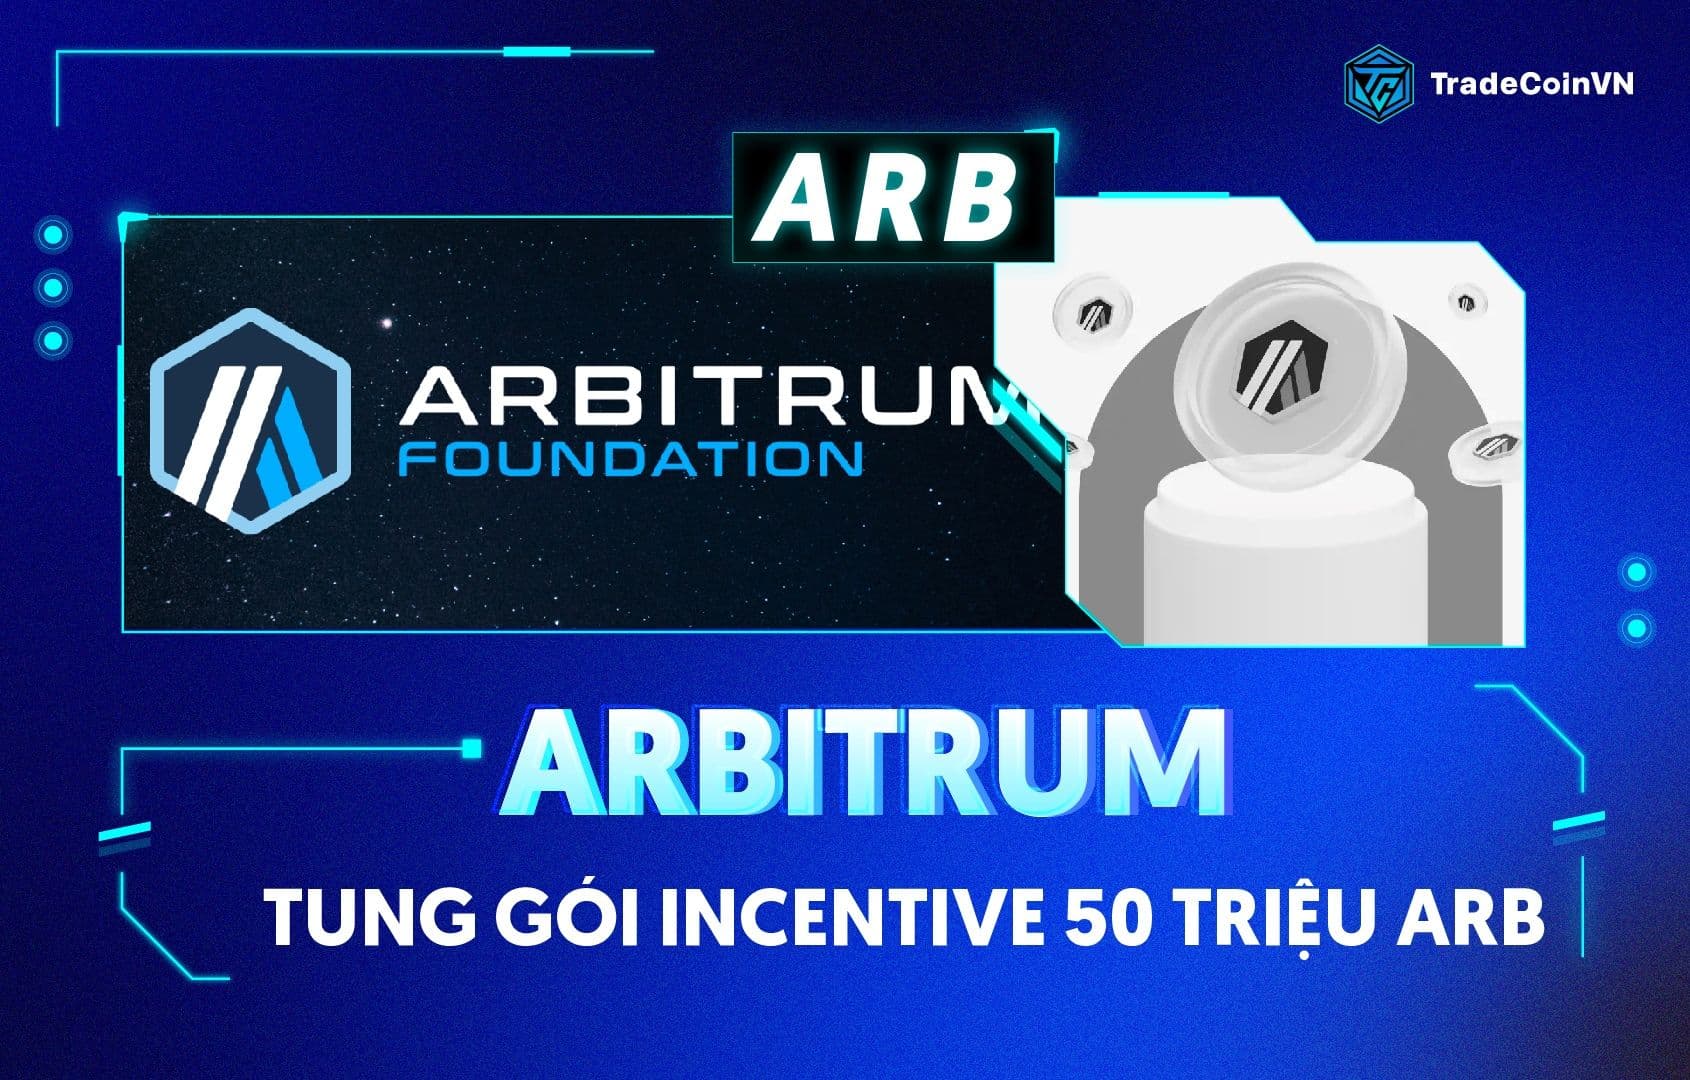 Arbitrum tung gói Incentive 50 triệu ARB: Bước ngoặt mới cho hệ sinh thái?